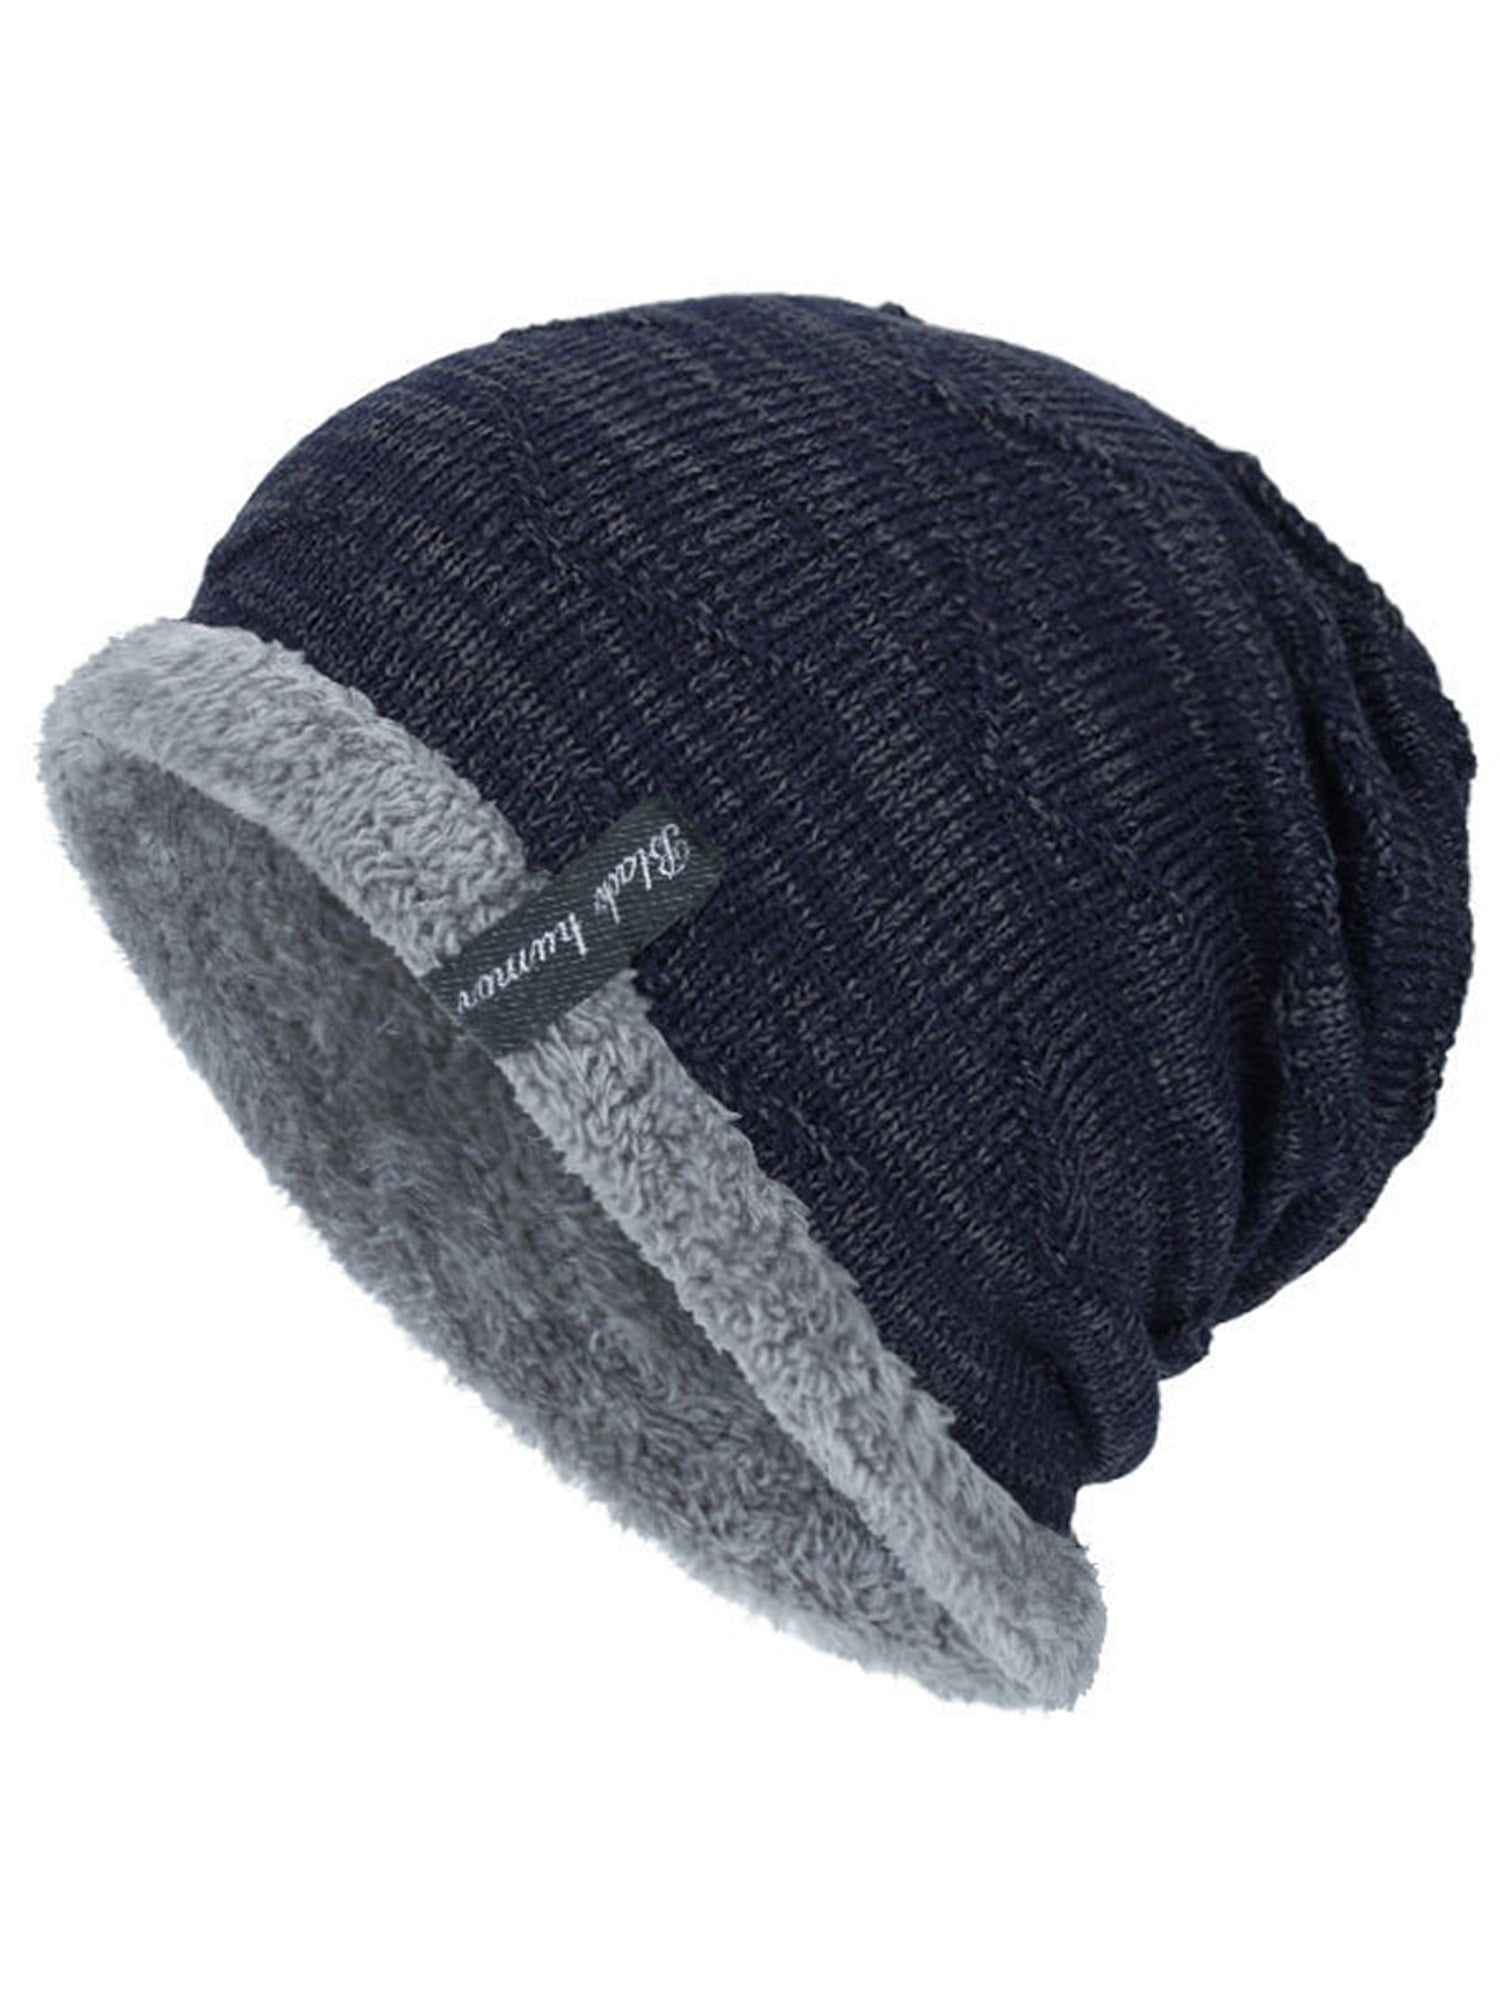 Men's Boy Knit Wool Beanie Soft Hats Winter Warm Ski Slouch Baggy ...